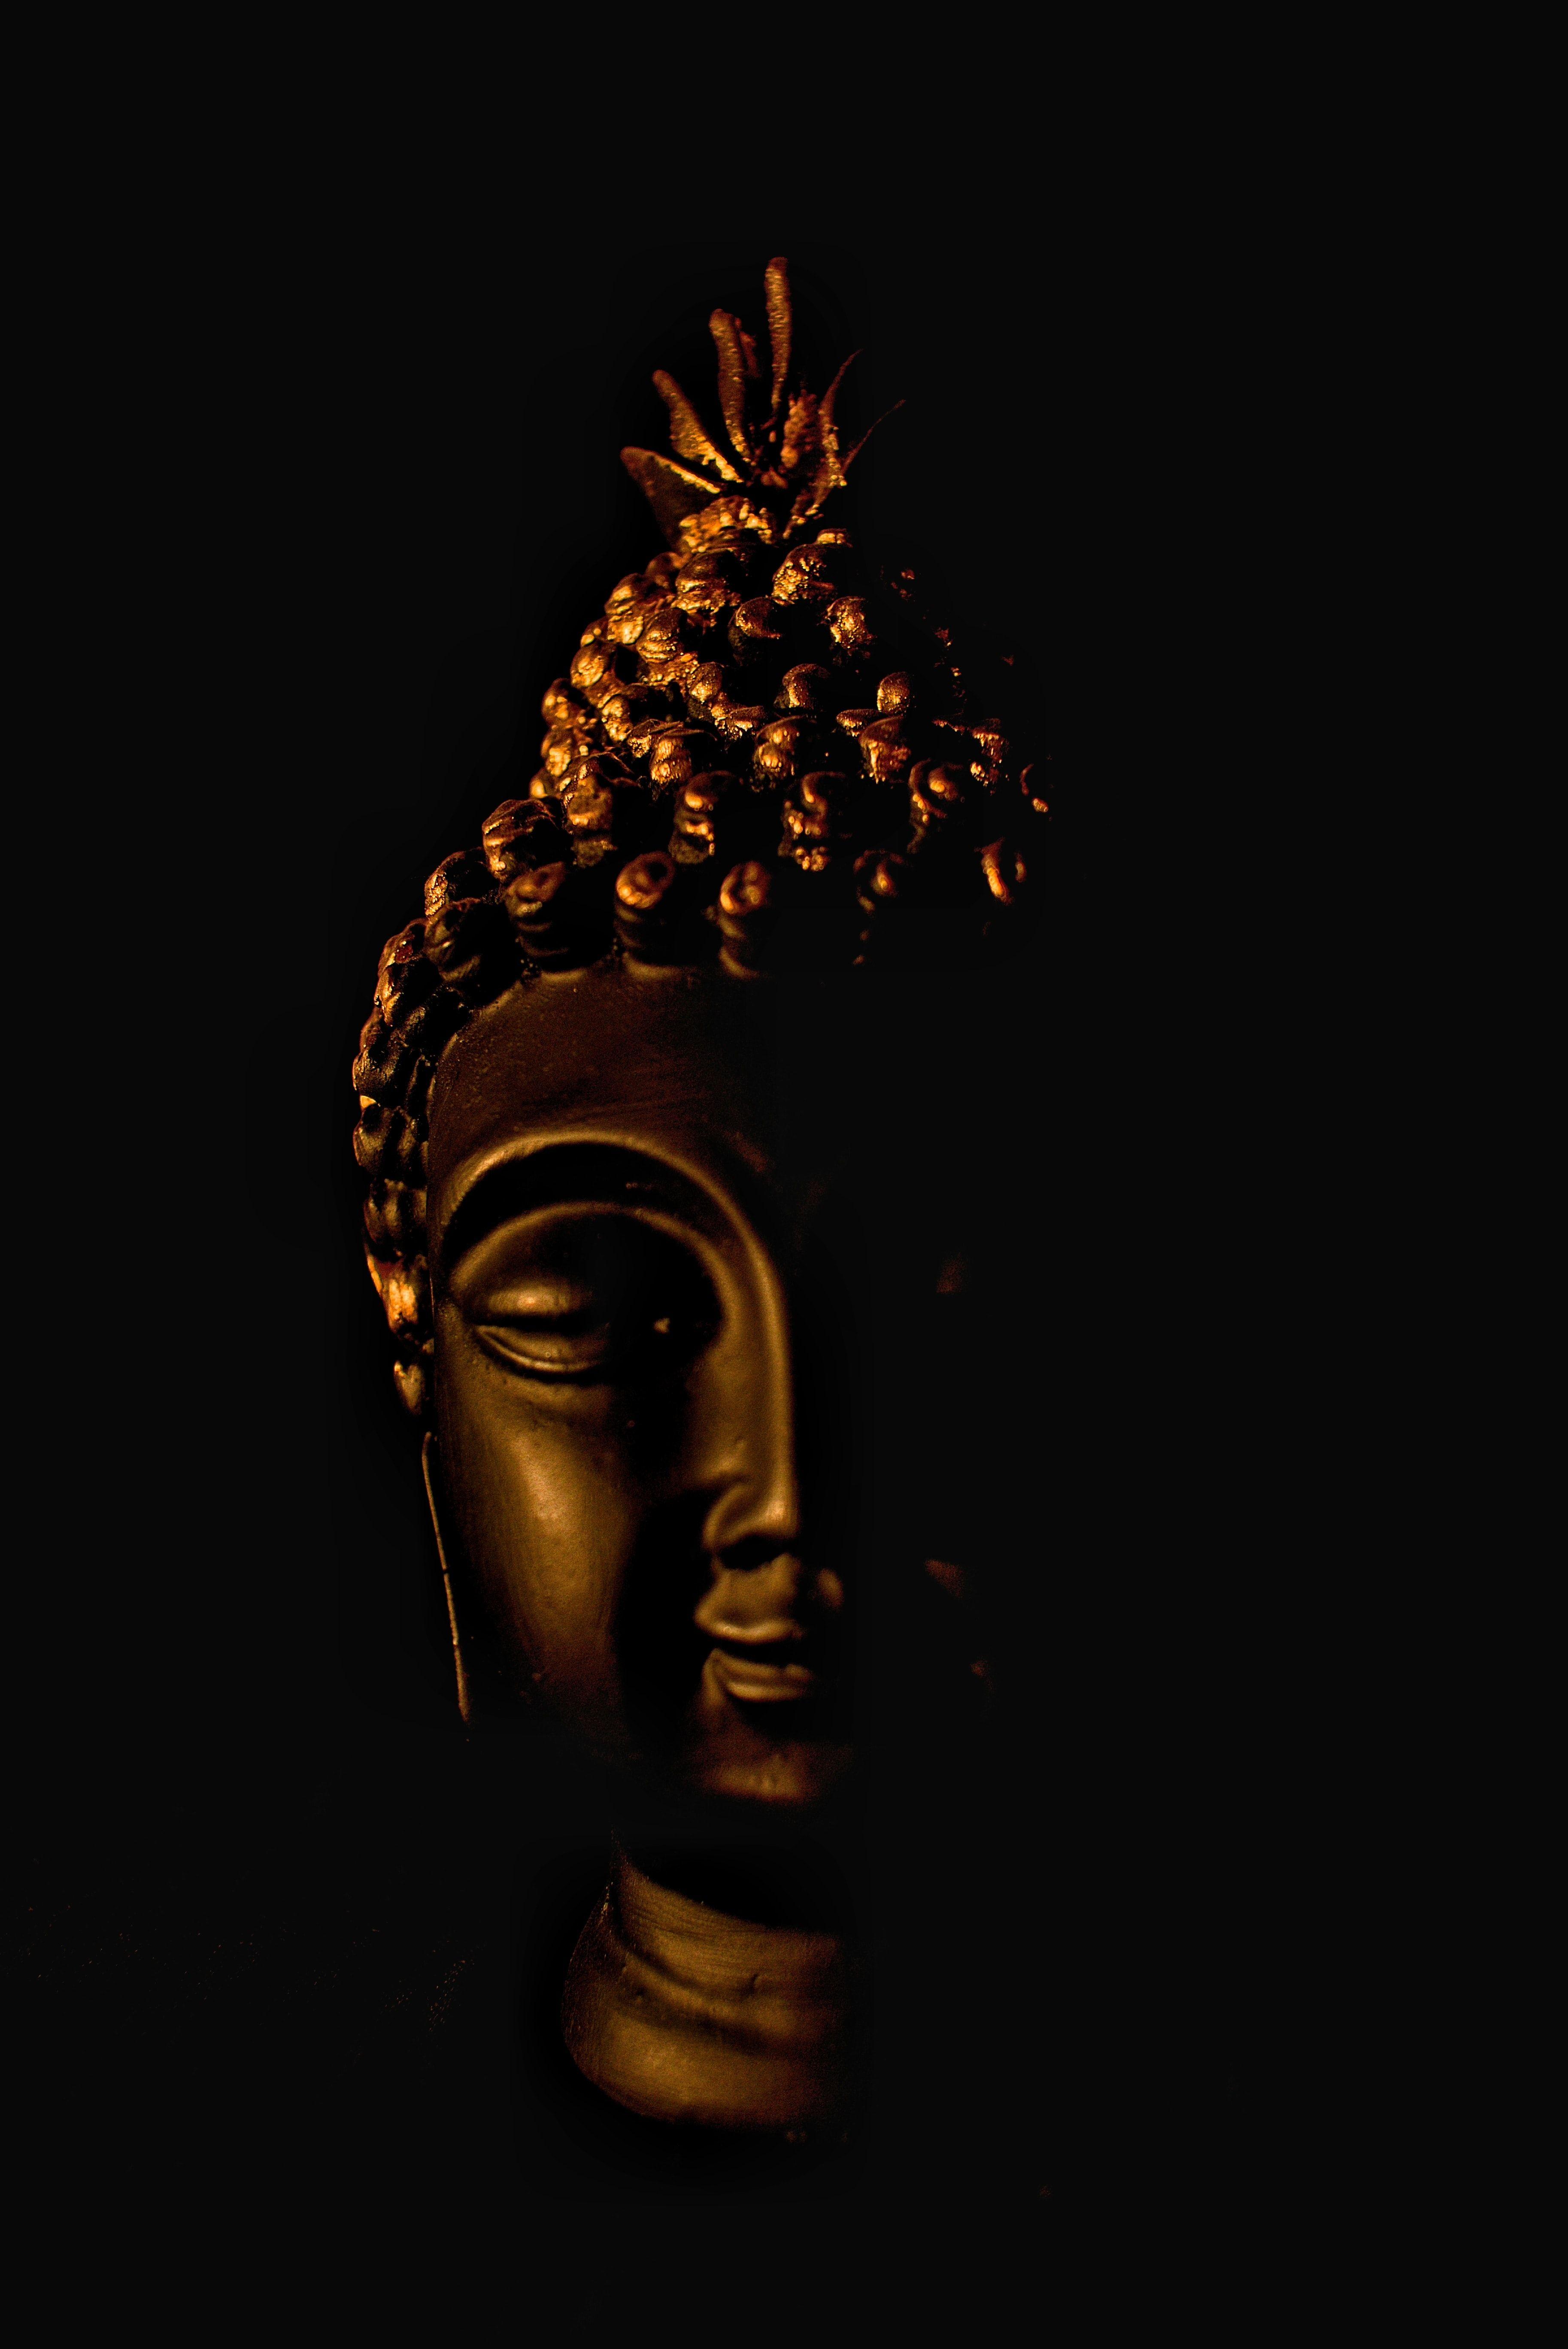 Ảnh tượng Phật Gautama 3653x5473 - Hình ảnh thờ cúng miễn phí